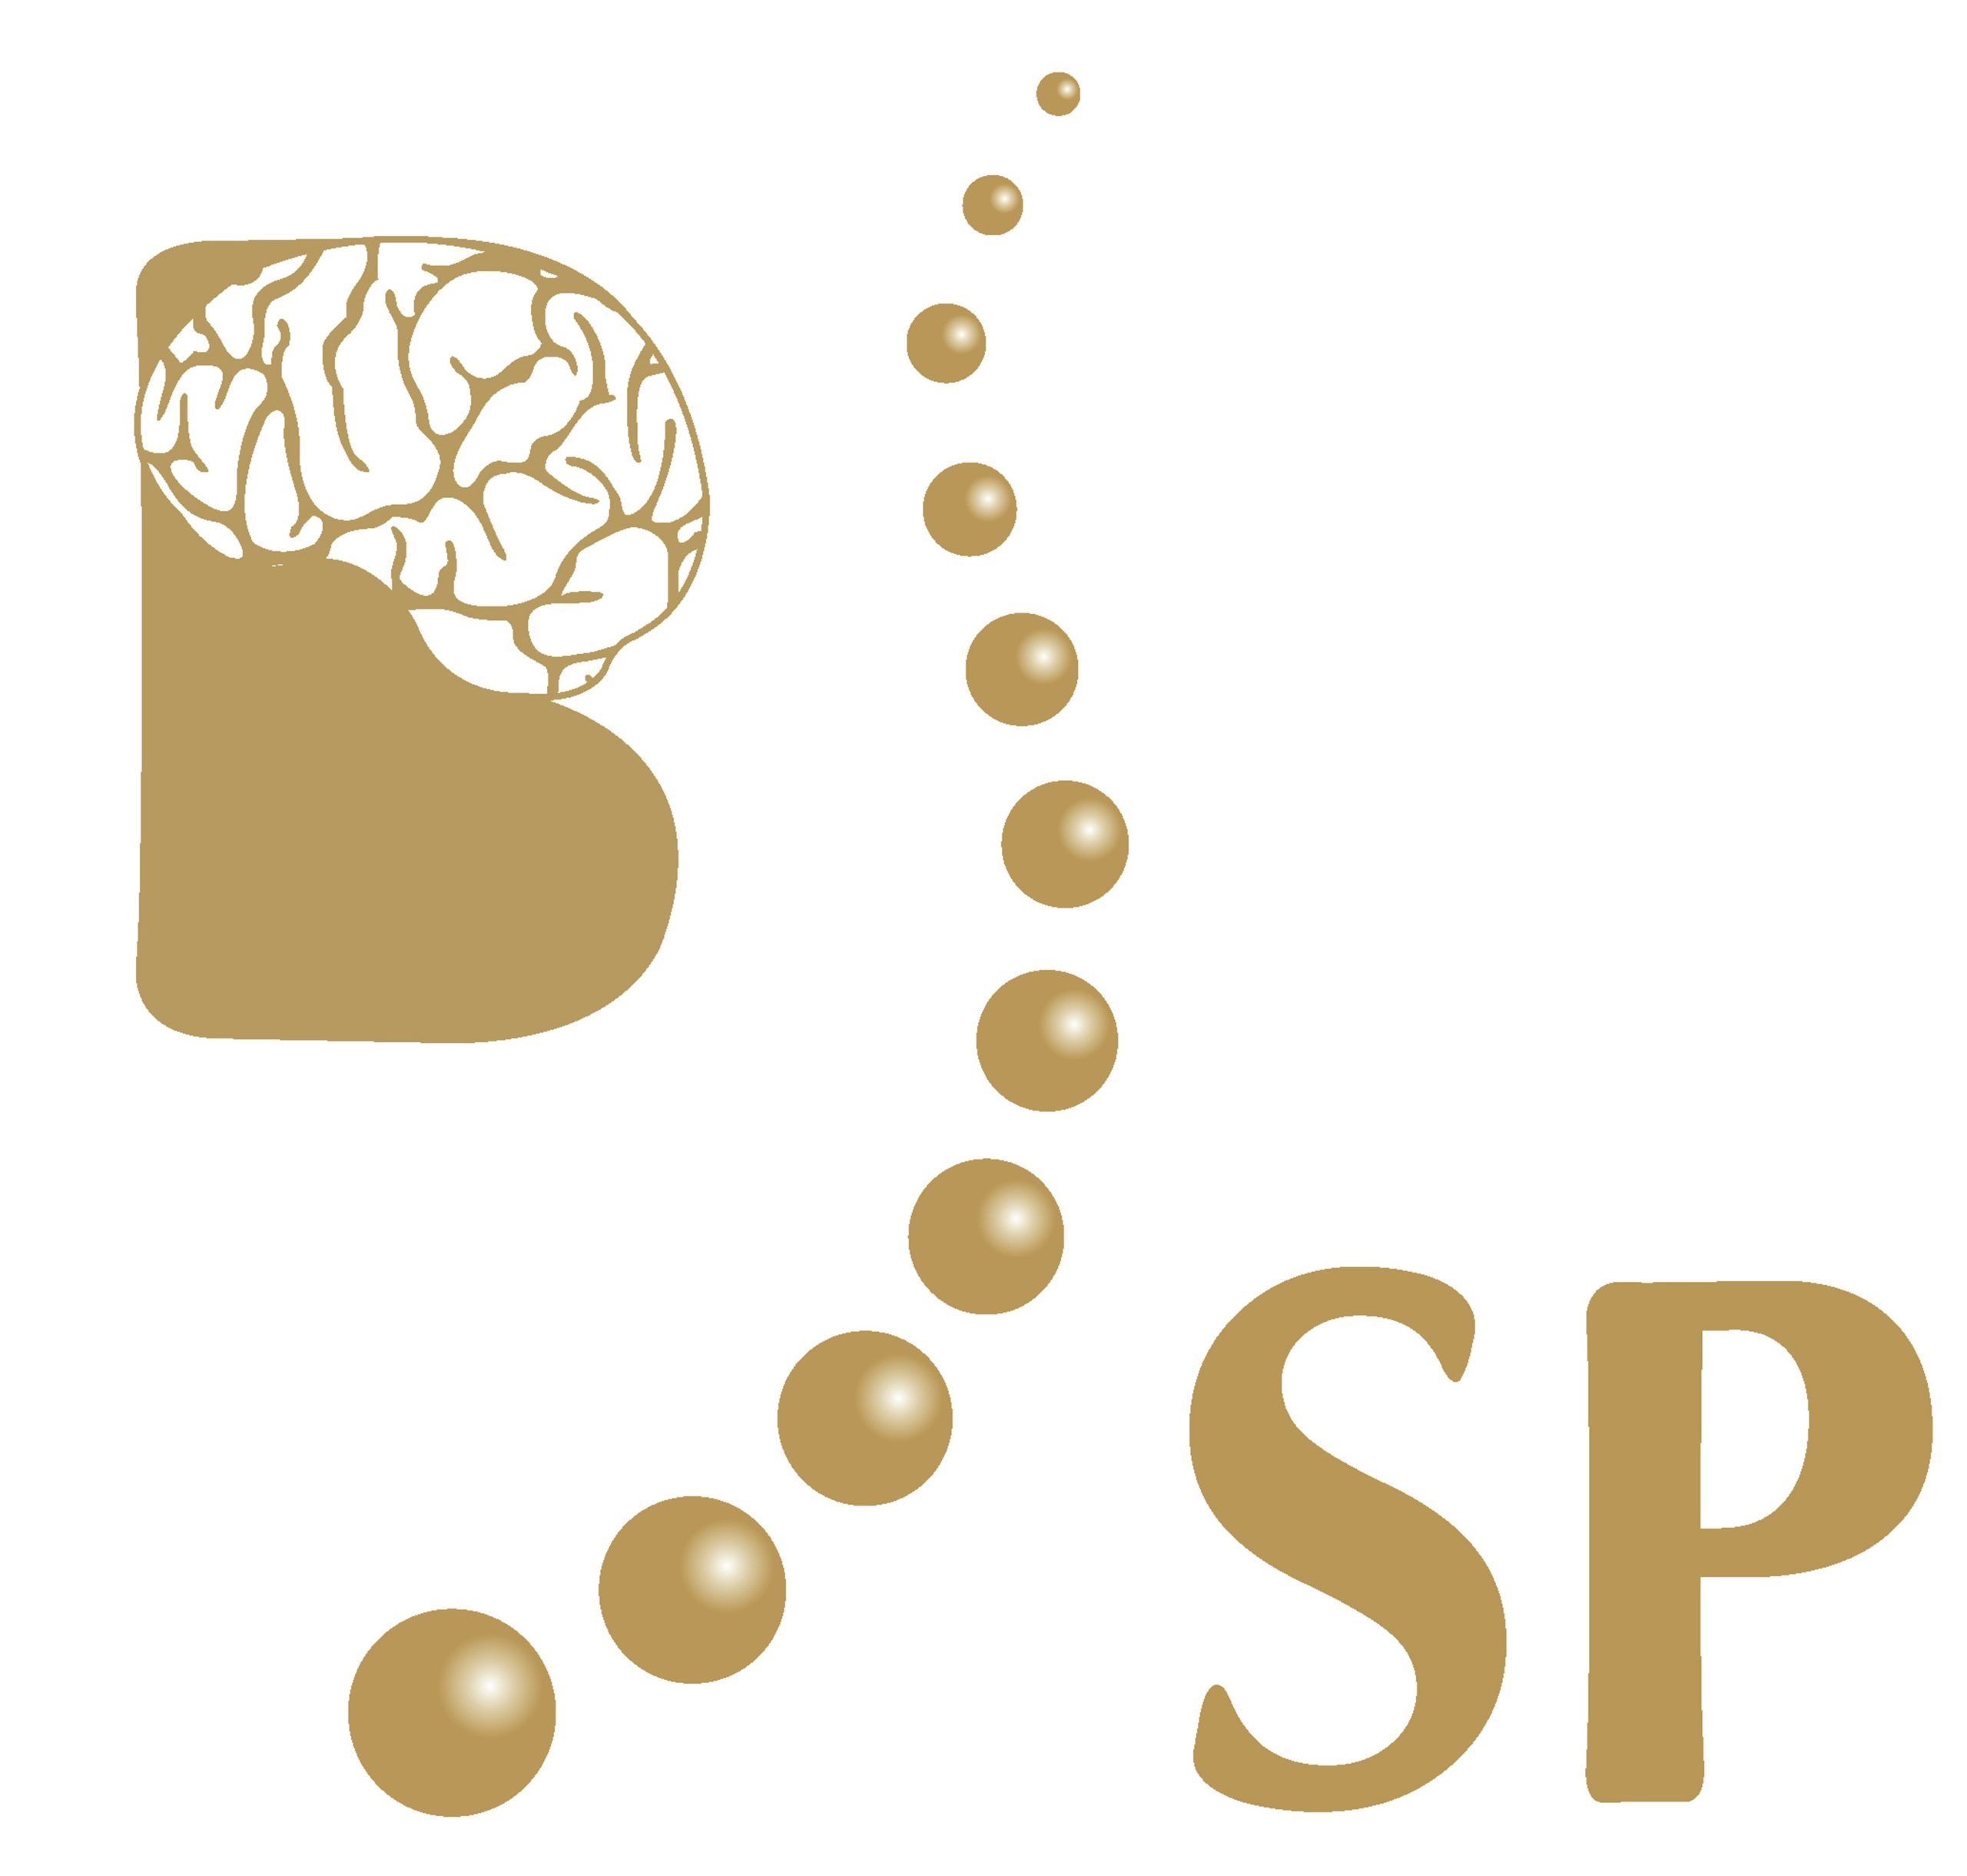 HKBSSP logo